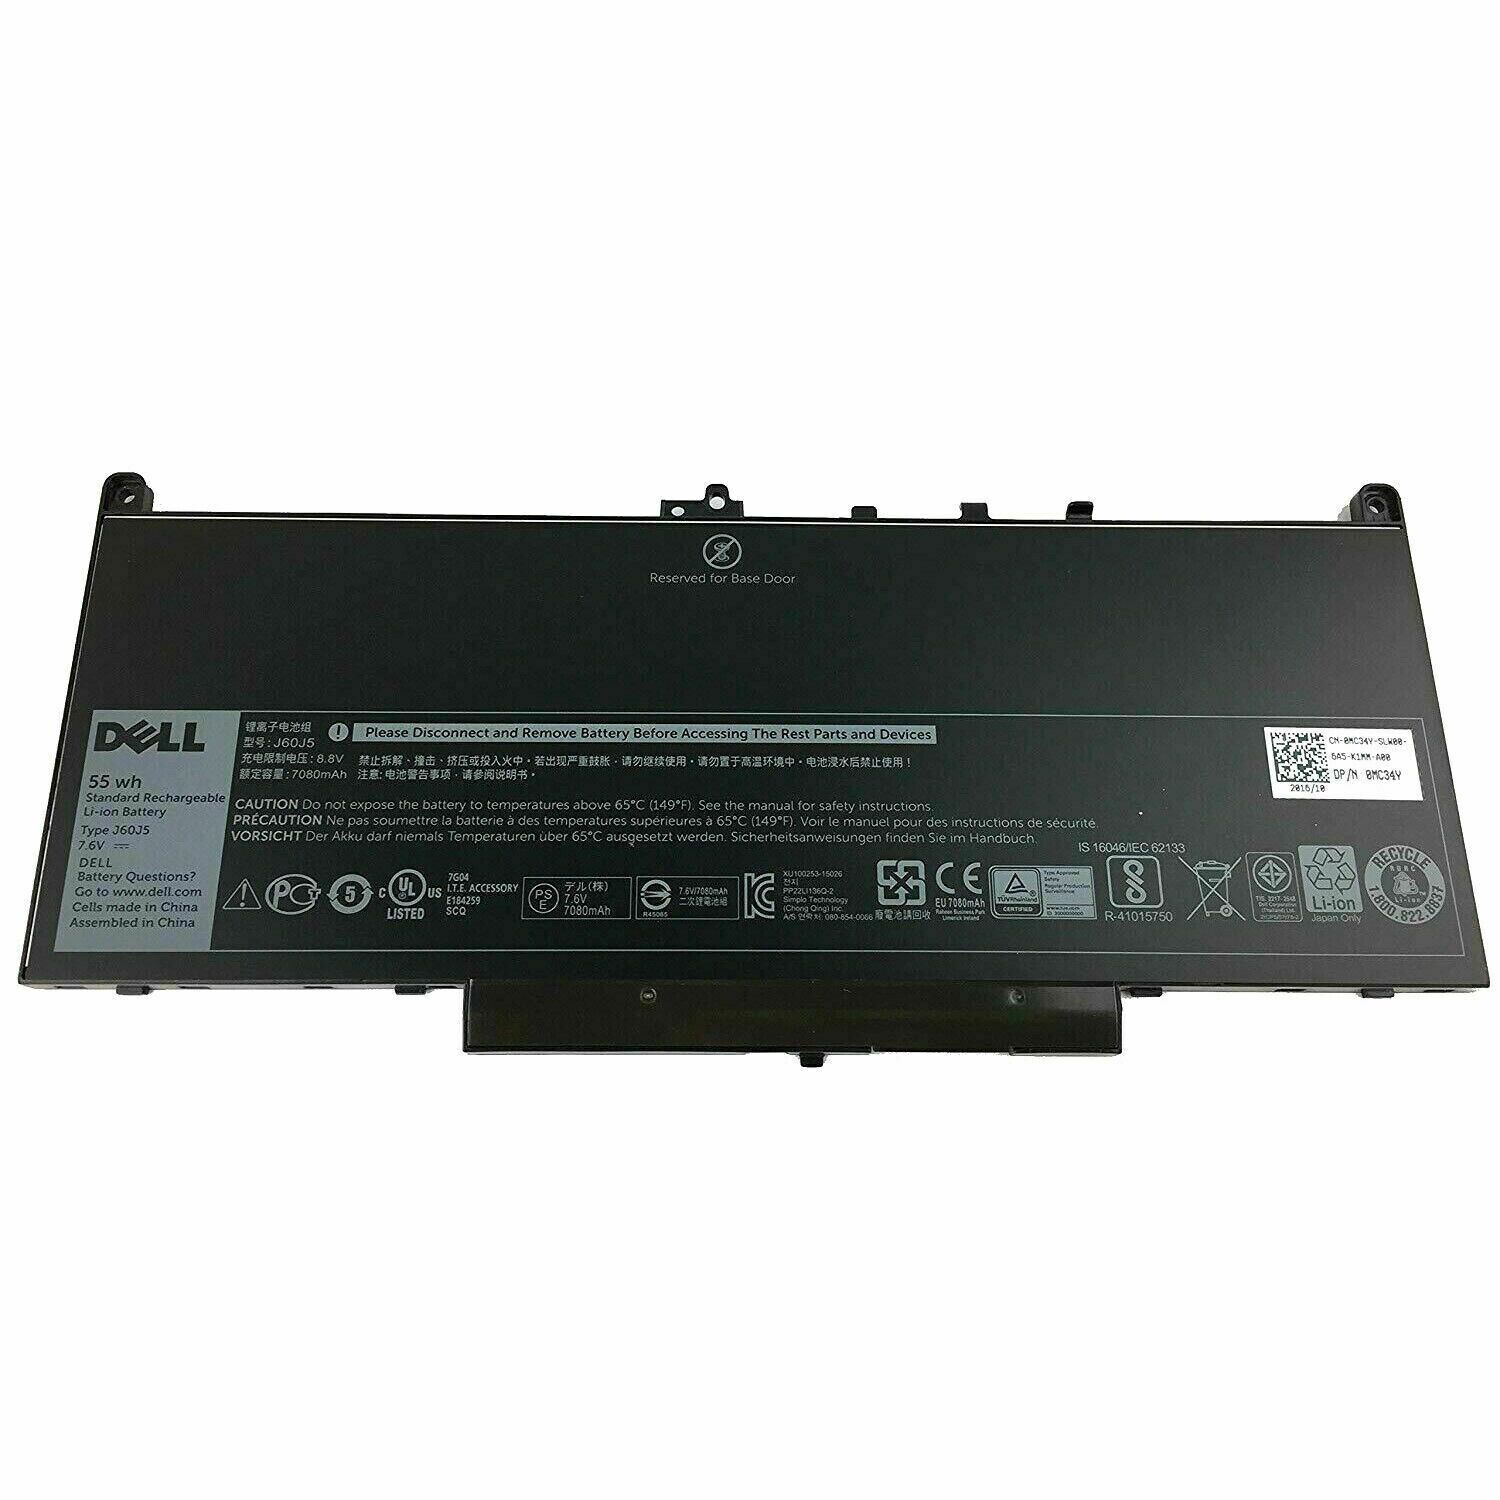 Genuine 55Wh J60J5 Battery for Dell Latitude E7270 P26S001E7470 P61G001 Series